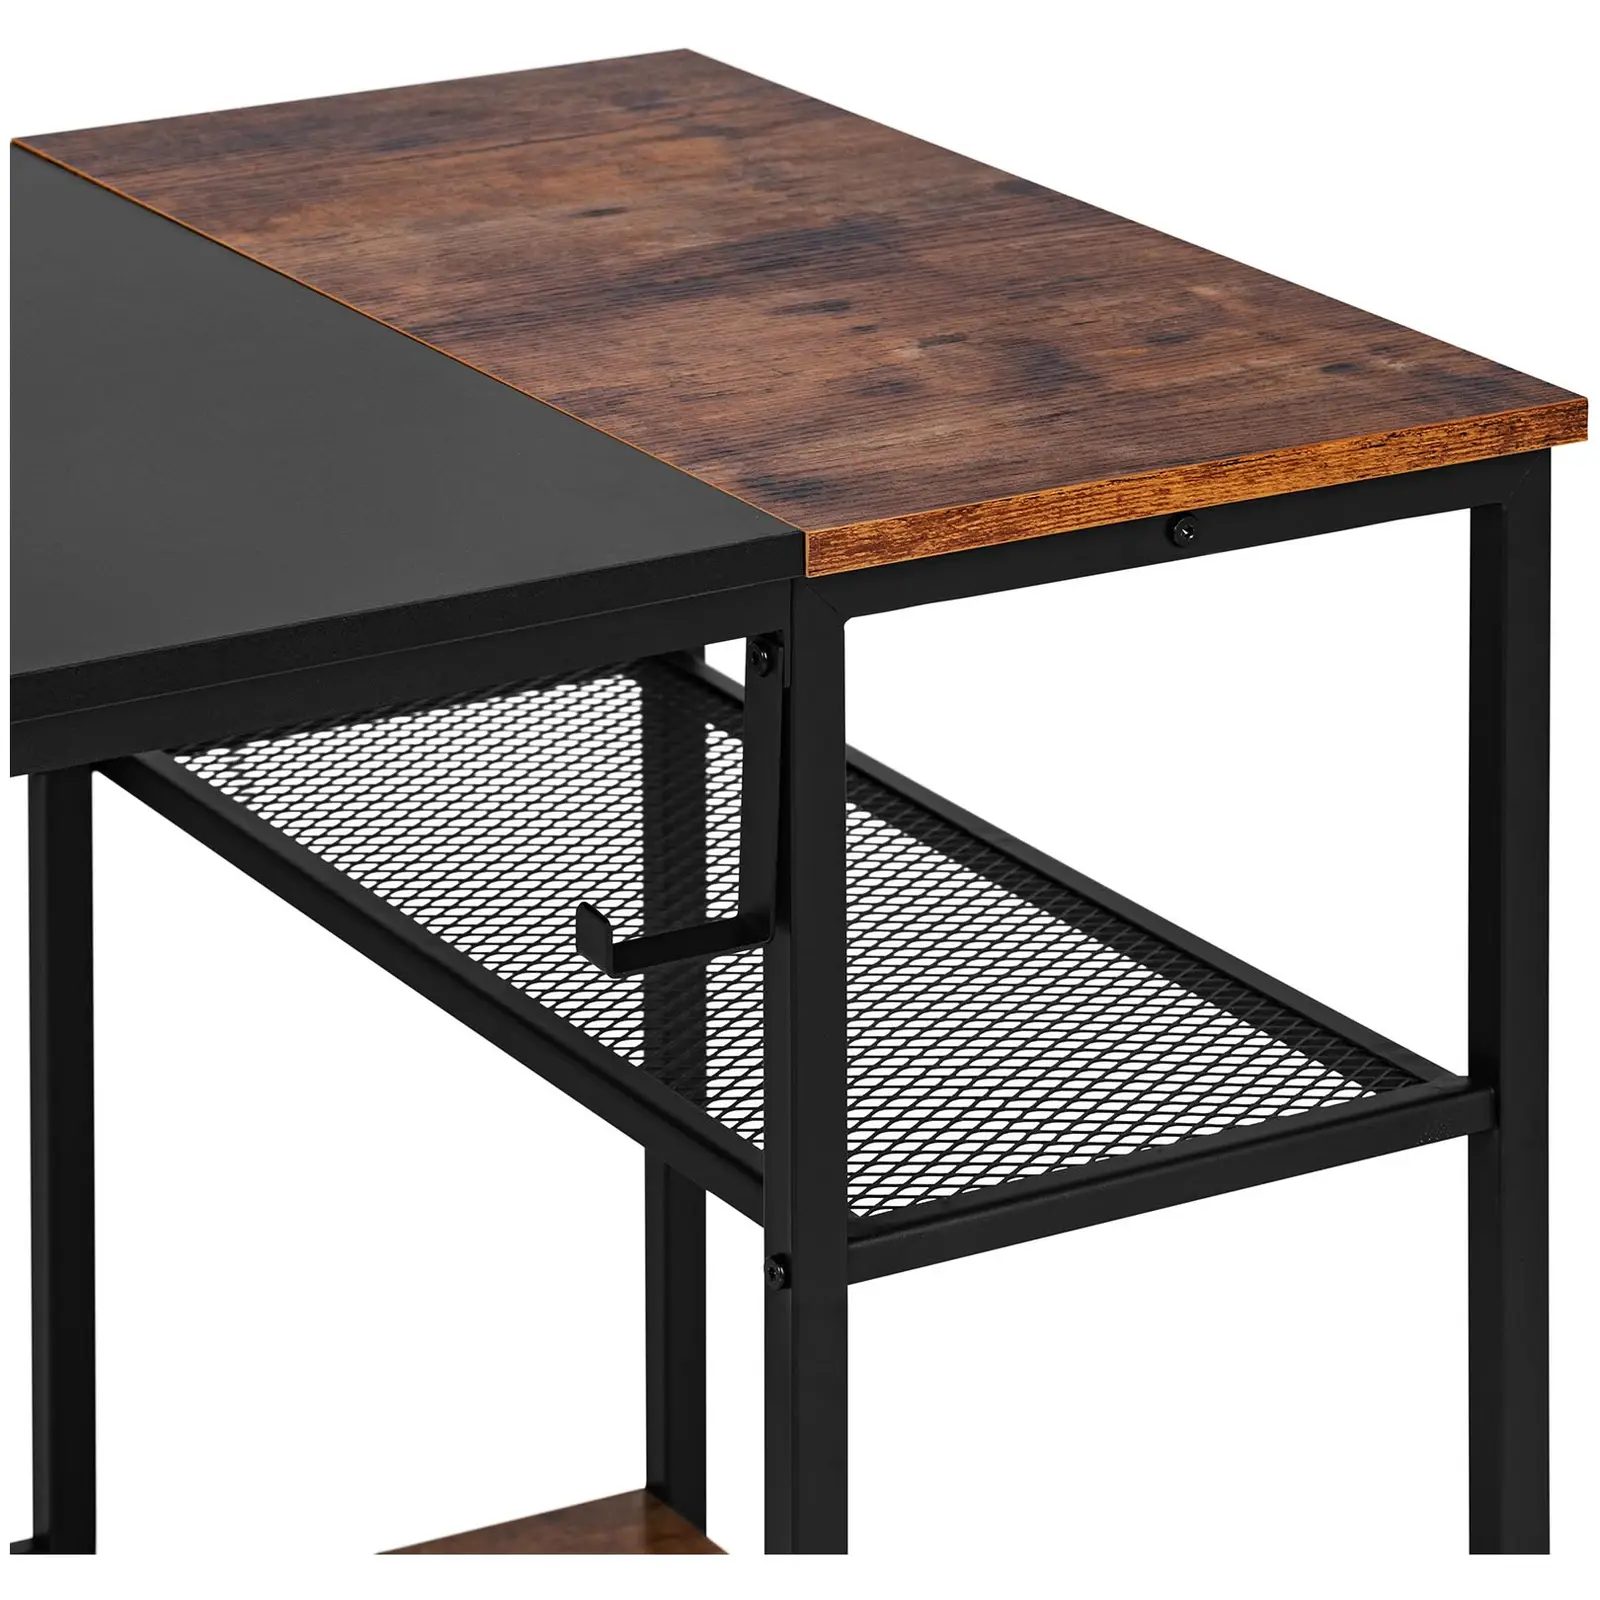 Desk - 120 x 60 cm - with side shelf